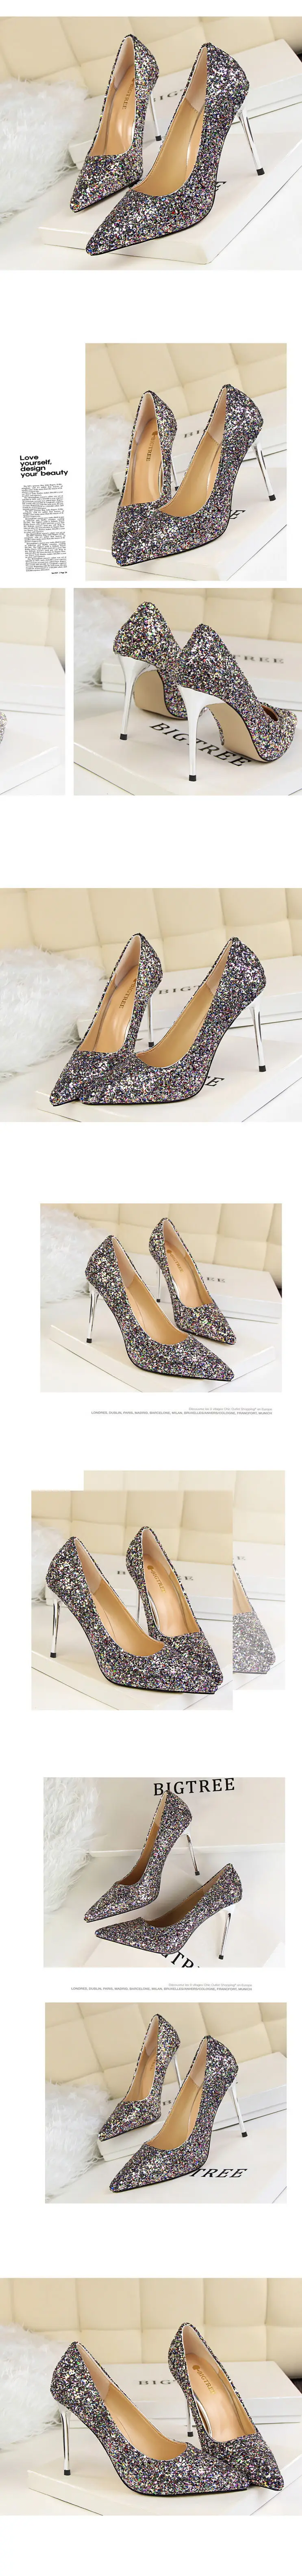 US$16.67-Women Pumps High Heels Black Leather Pointed Toe Stiletto Shoes  Woman Wedding Shoes Ladies Plus Big Size 11 12 13 Pump-Description